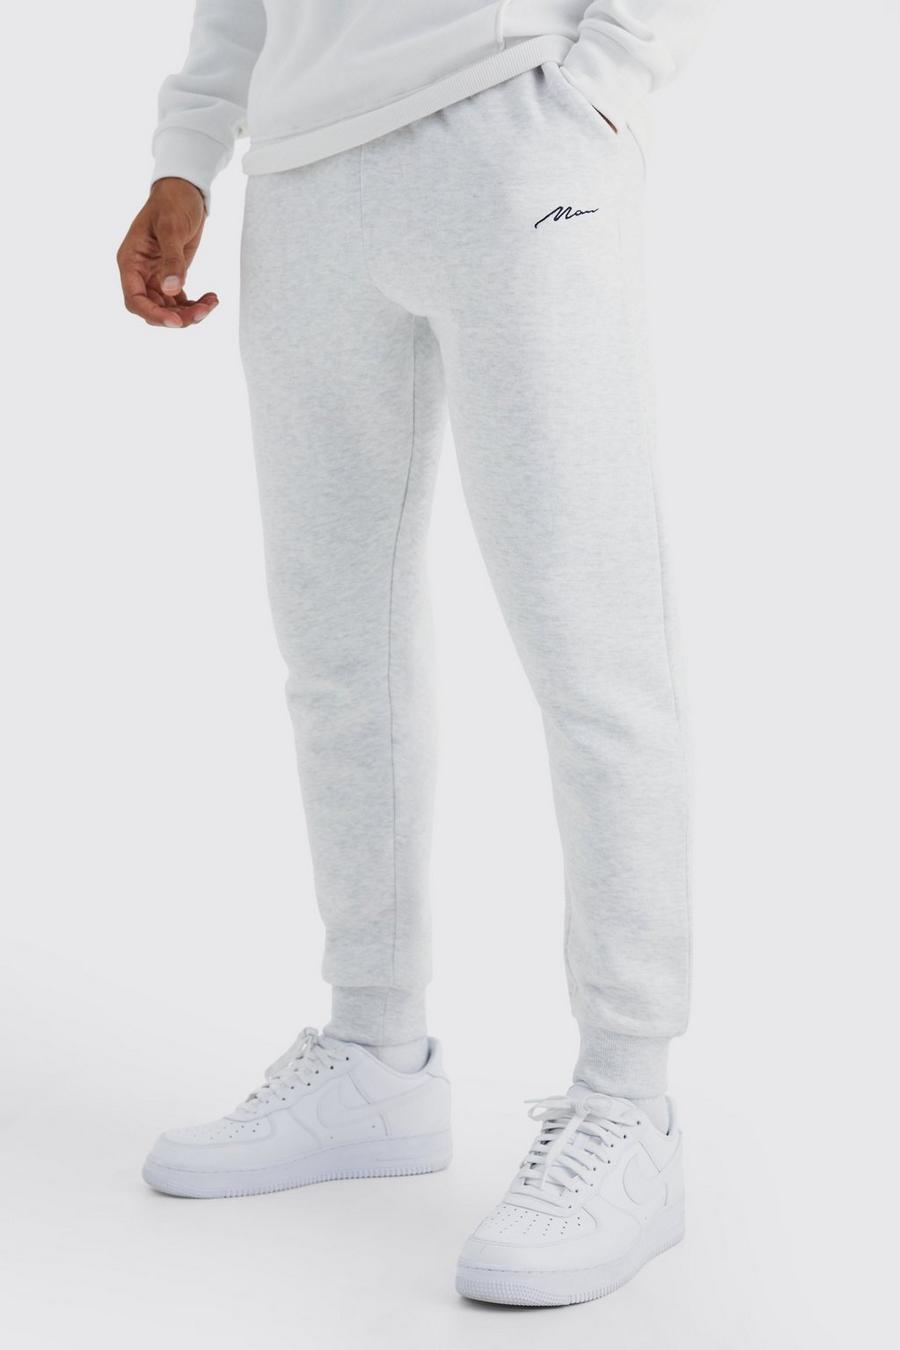 Pantalón deportivo ajustado con firma MAN, Grey marl grigio